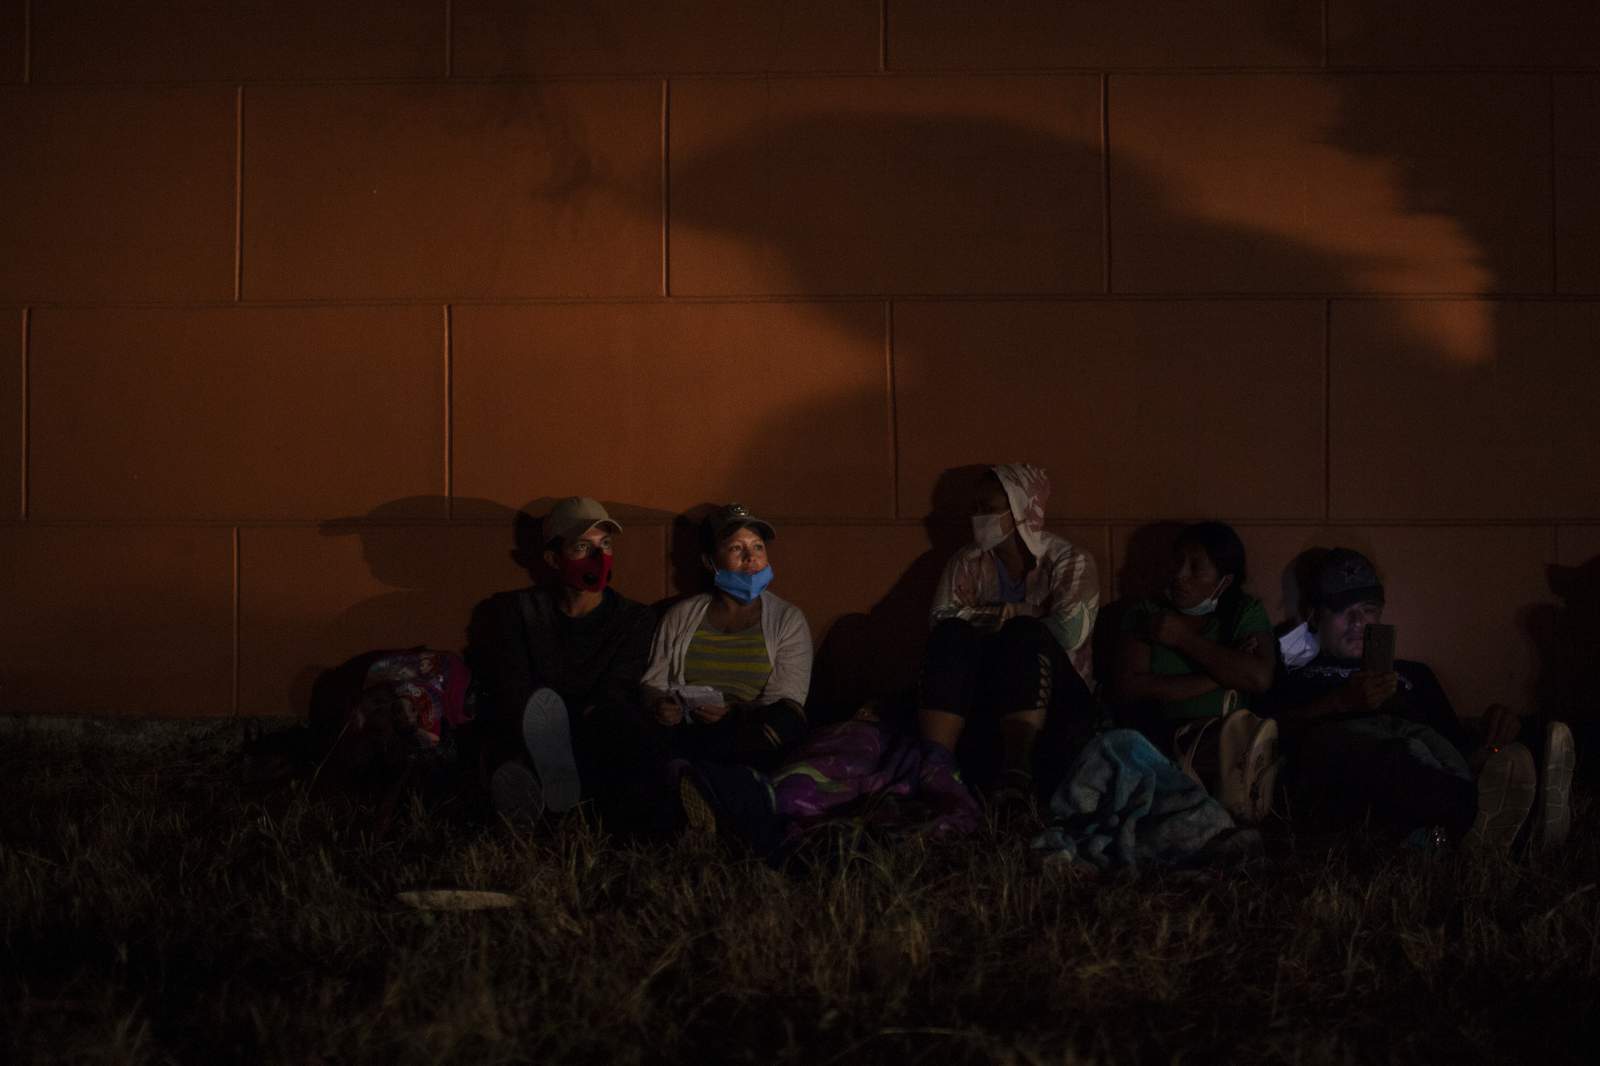 Guatemala tries blocking caravan of 9,000 Honduran migrants